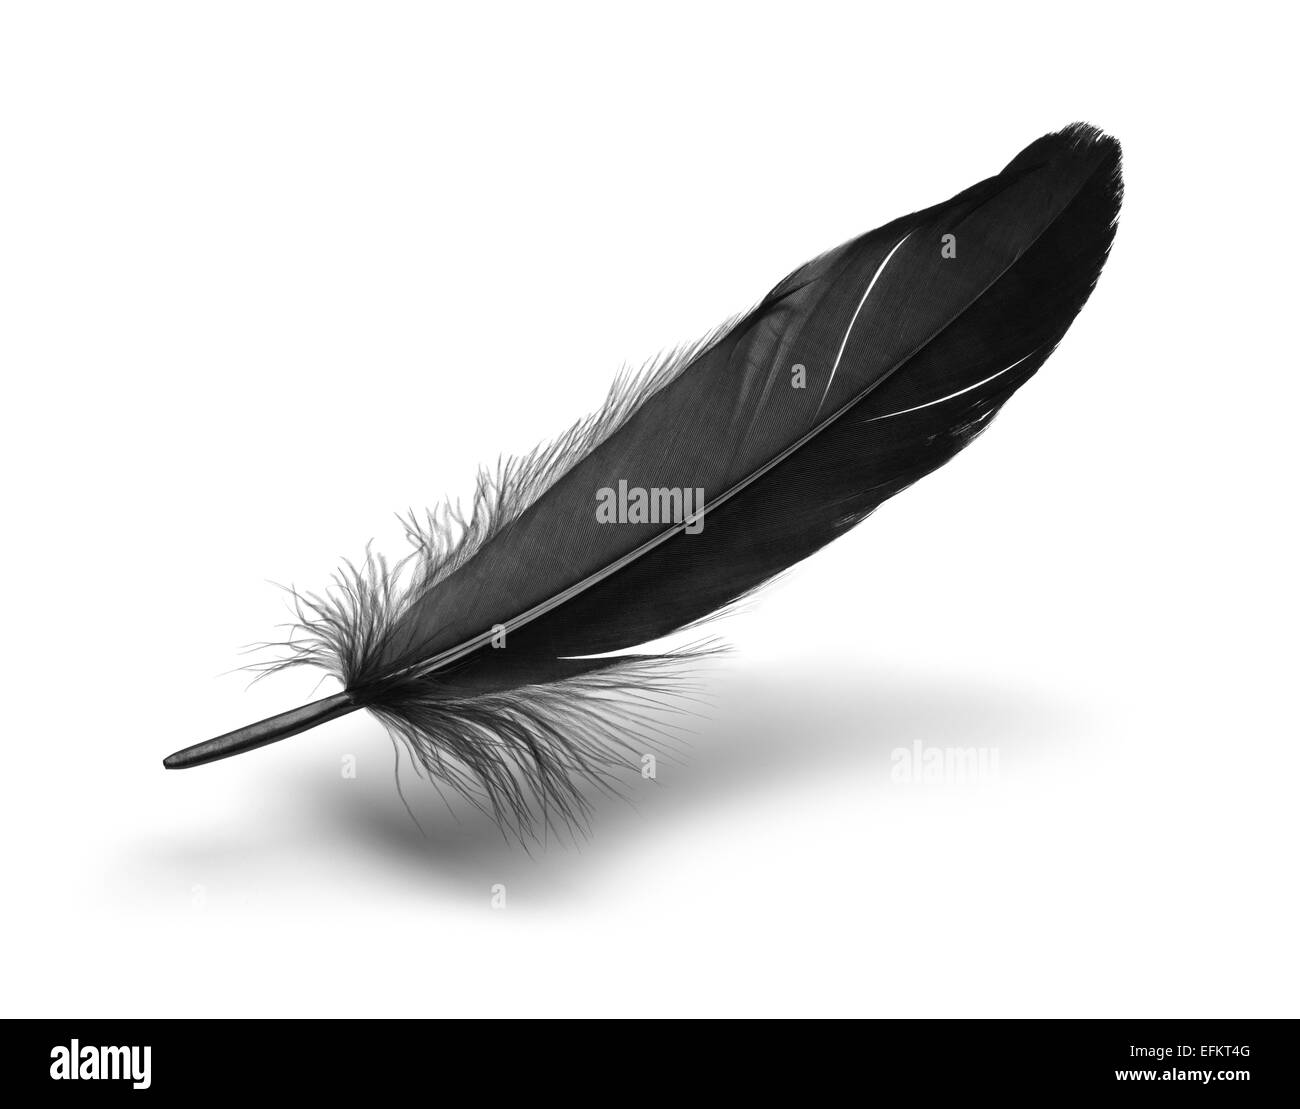 Single Black Floating Feather Isolated on White Background. Stock Photo